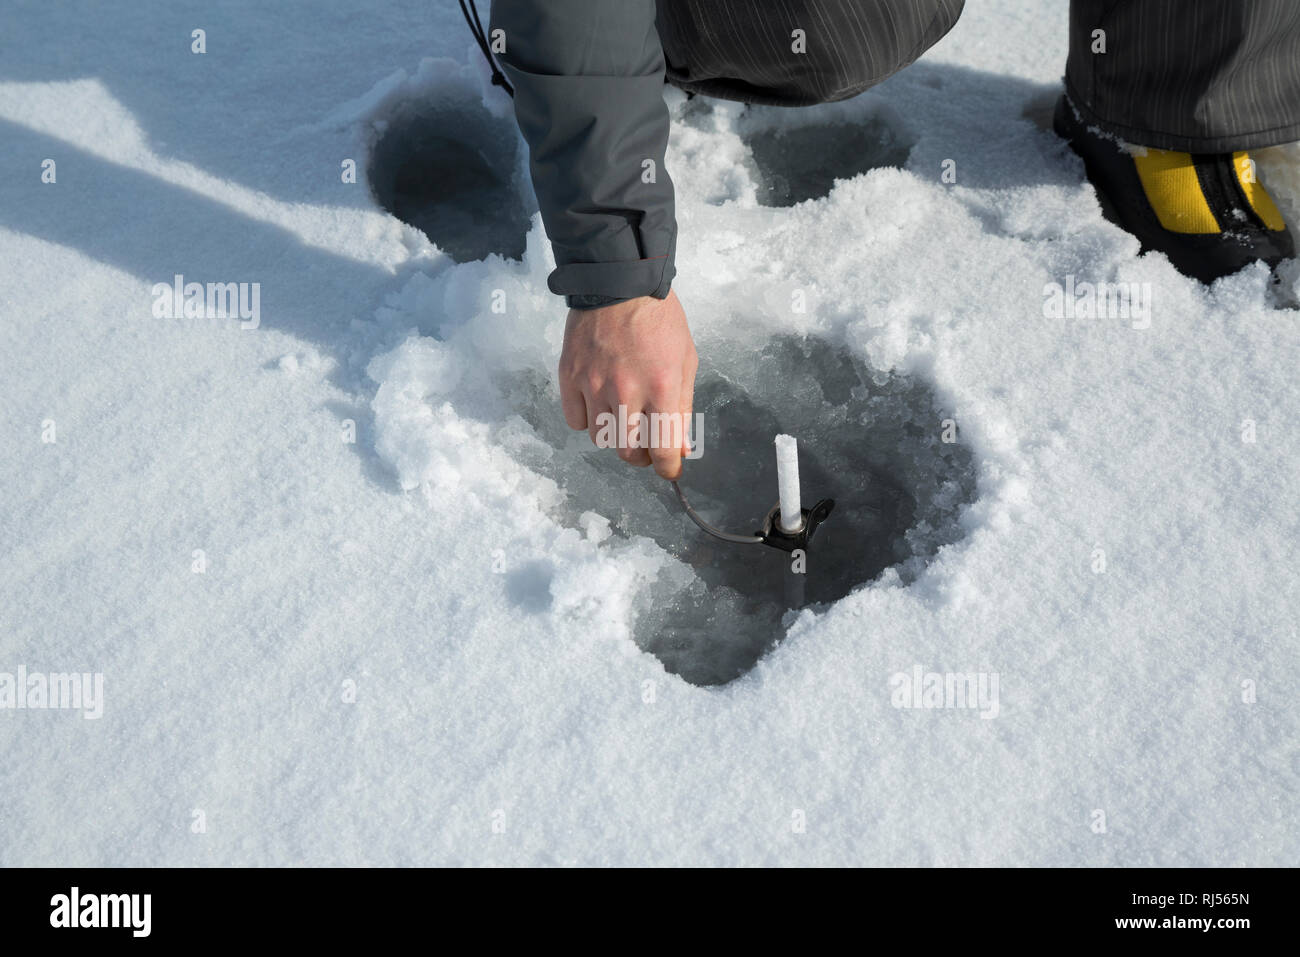 Les hommes de la glace sur un lac gelé avec broche à glace derrière la main. Selective focus Banque D'Images